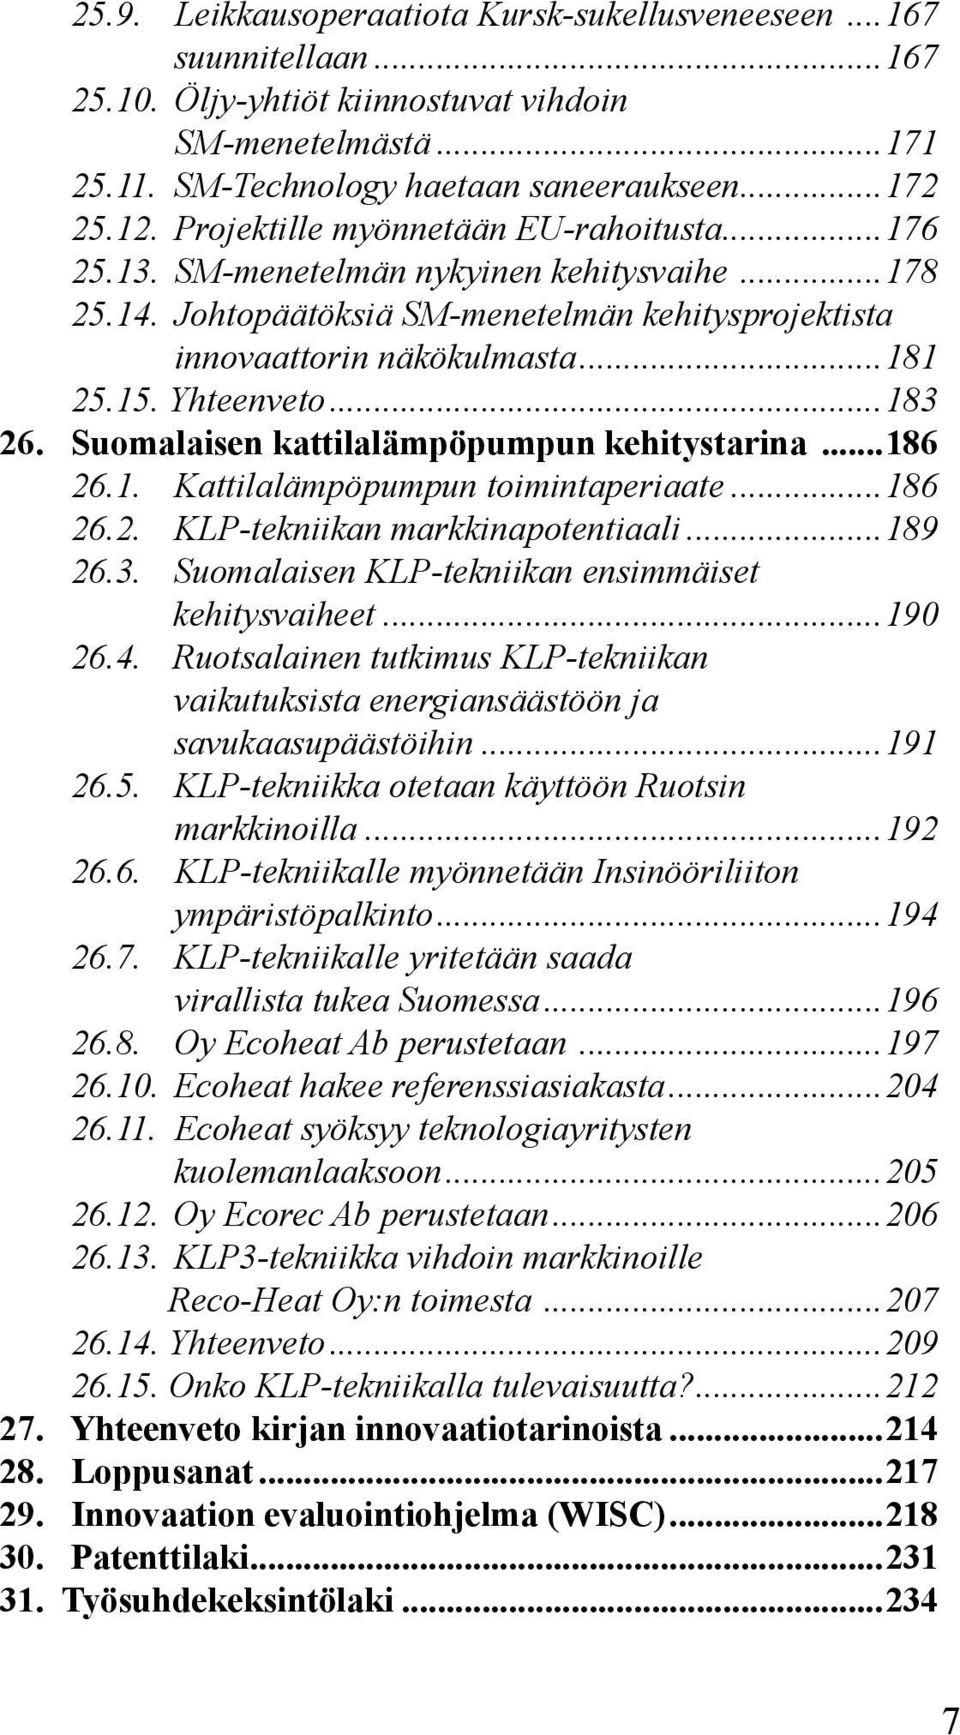 ..183 26. Suomalaisen kattilalämpöpumpun kehitystarina...186 26.1. Kattilalämpöpumpun toimintaperiaate...186 26.2. KLP-tekniikan markkinapotentiaali...189 26.3. Suomalaisen KLP-tekniikan ensimmäiset kehitysvaiheet.